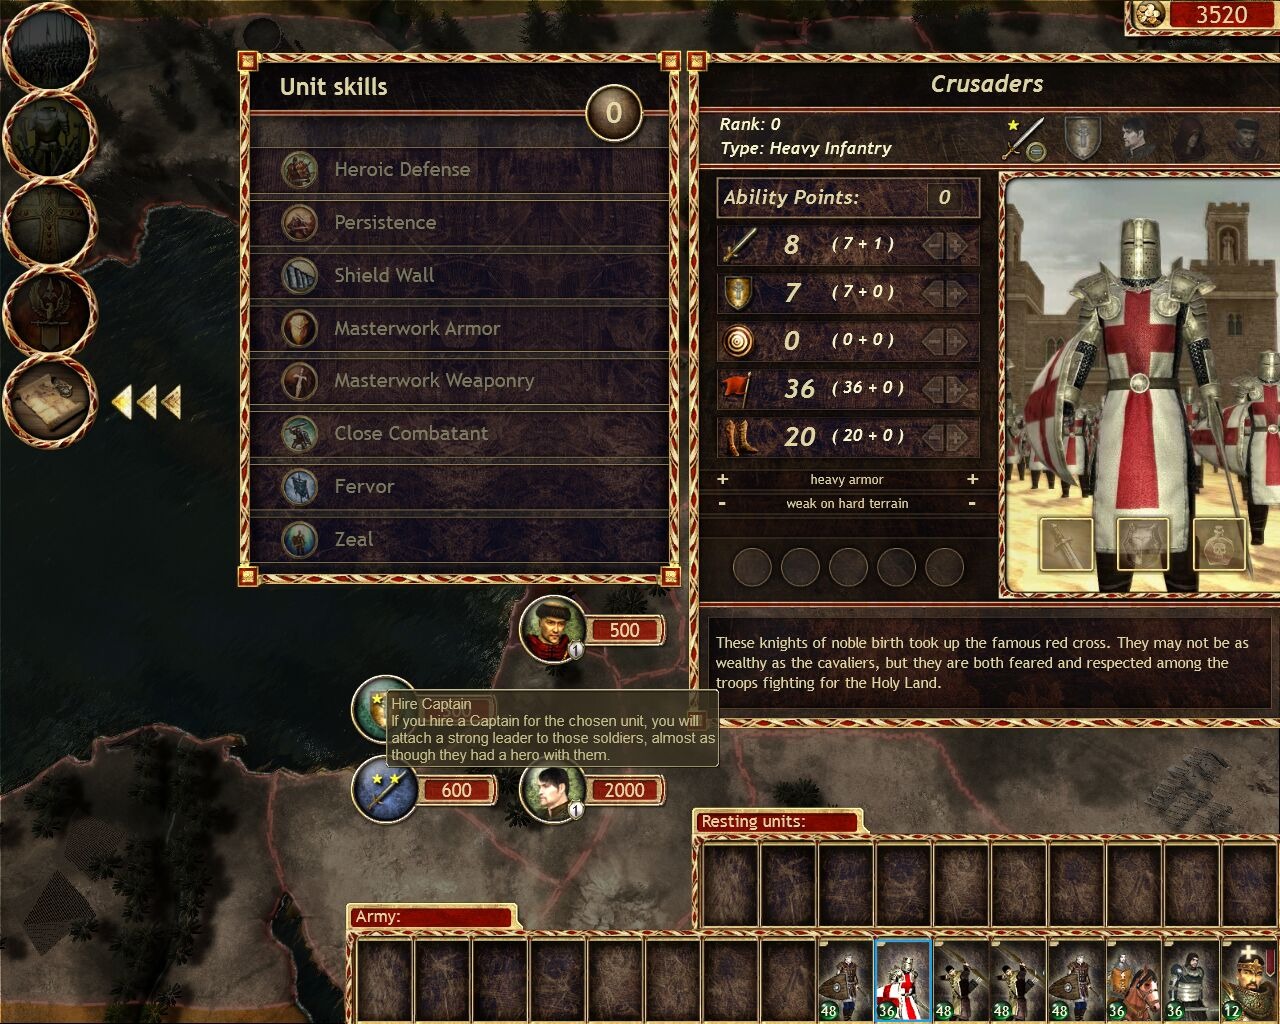 jeuxvideo.com Lionheart : King's Crusade - PC Image 70 sur 208